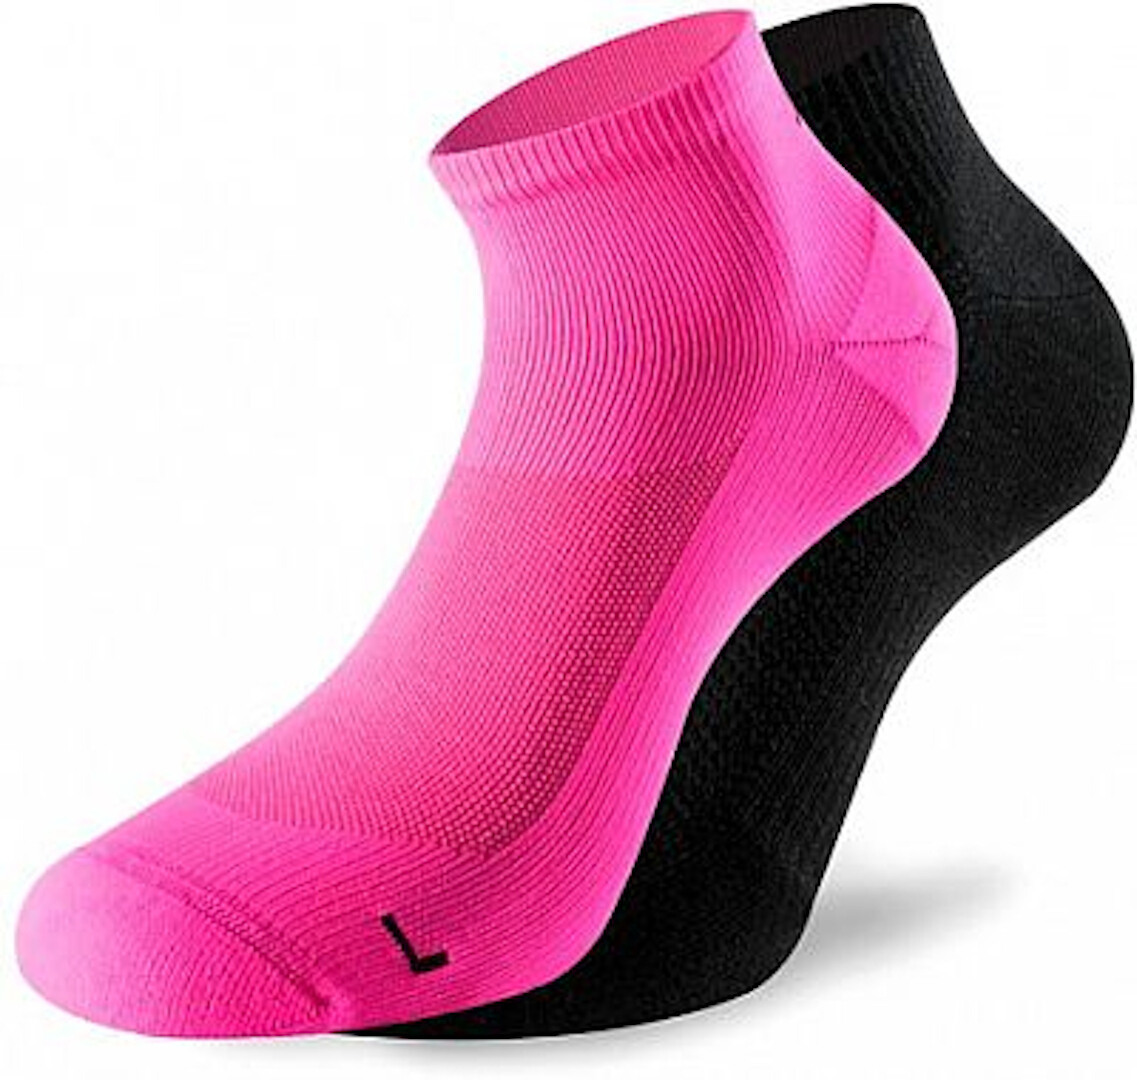 Lenz 3.0 Running Socken, schwarz-pink, Größe 35 - 38